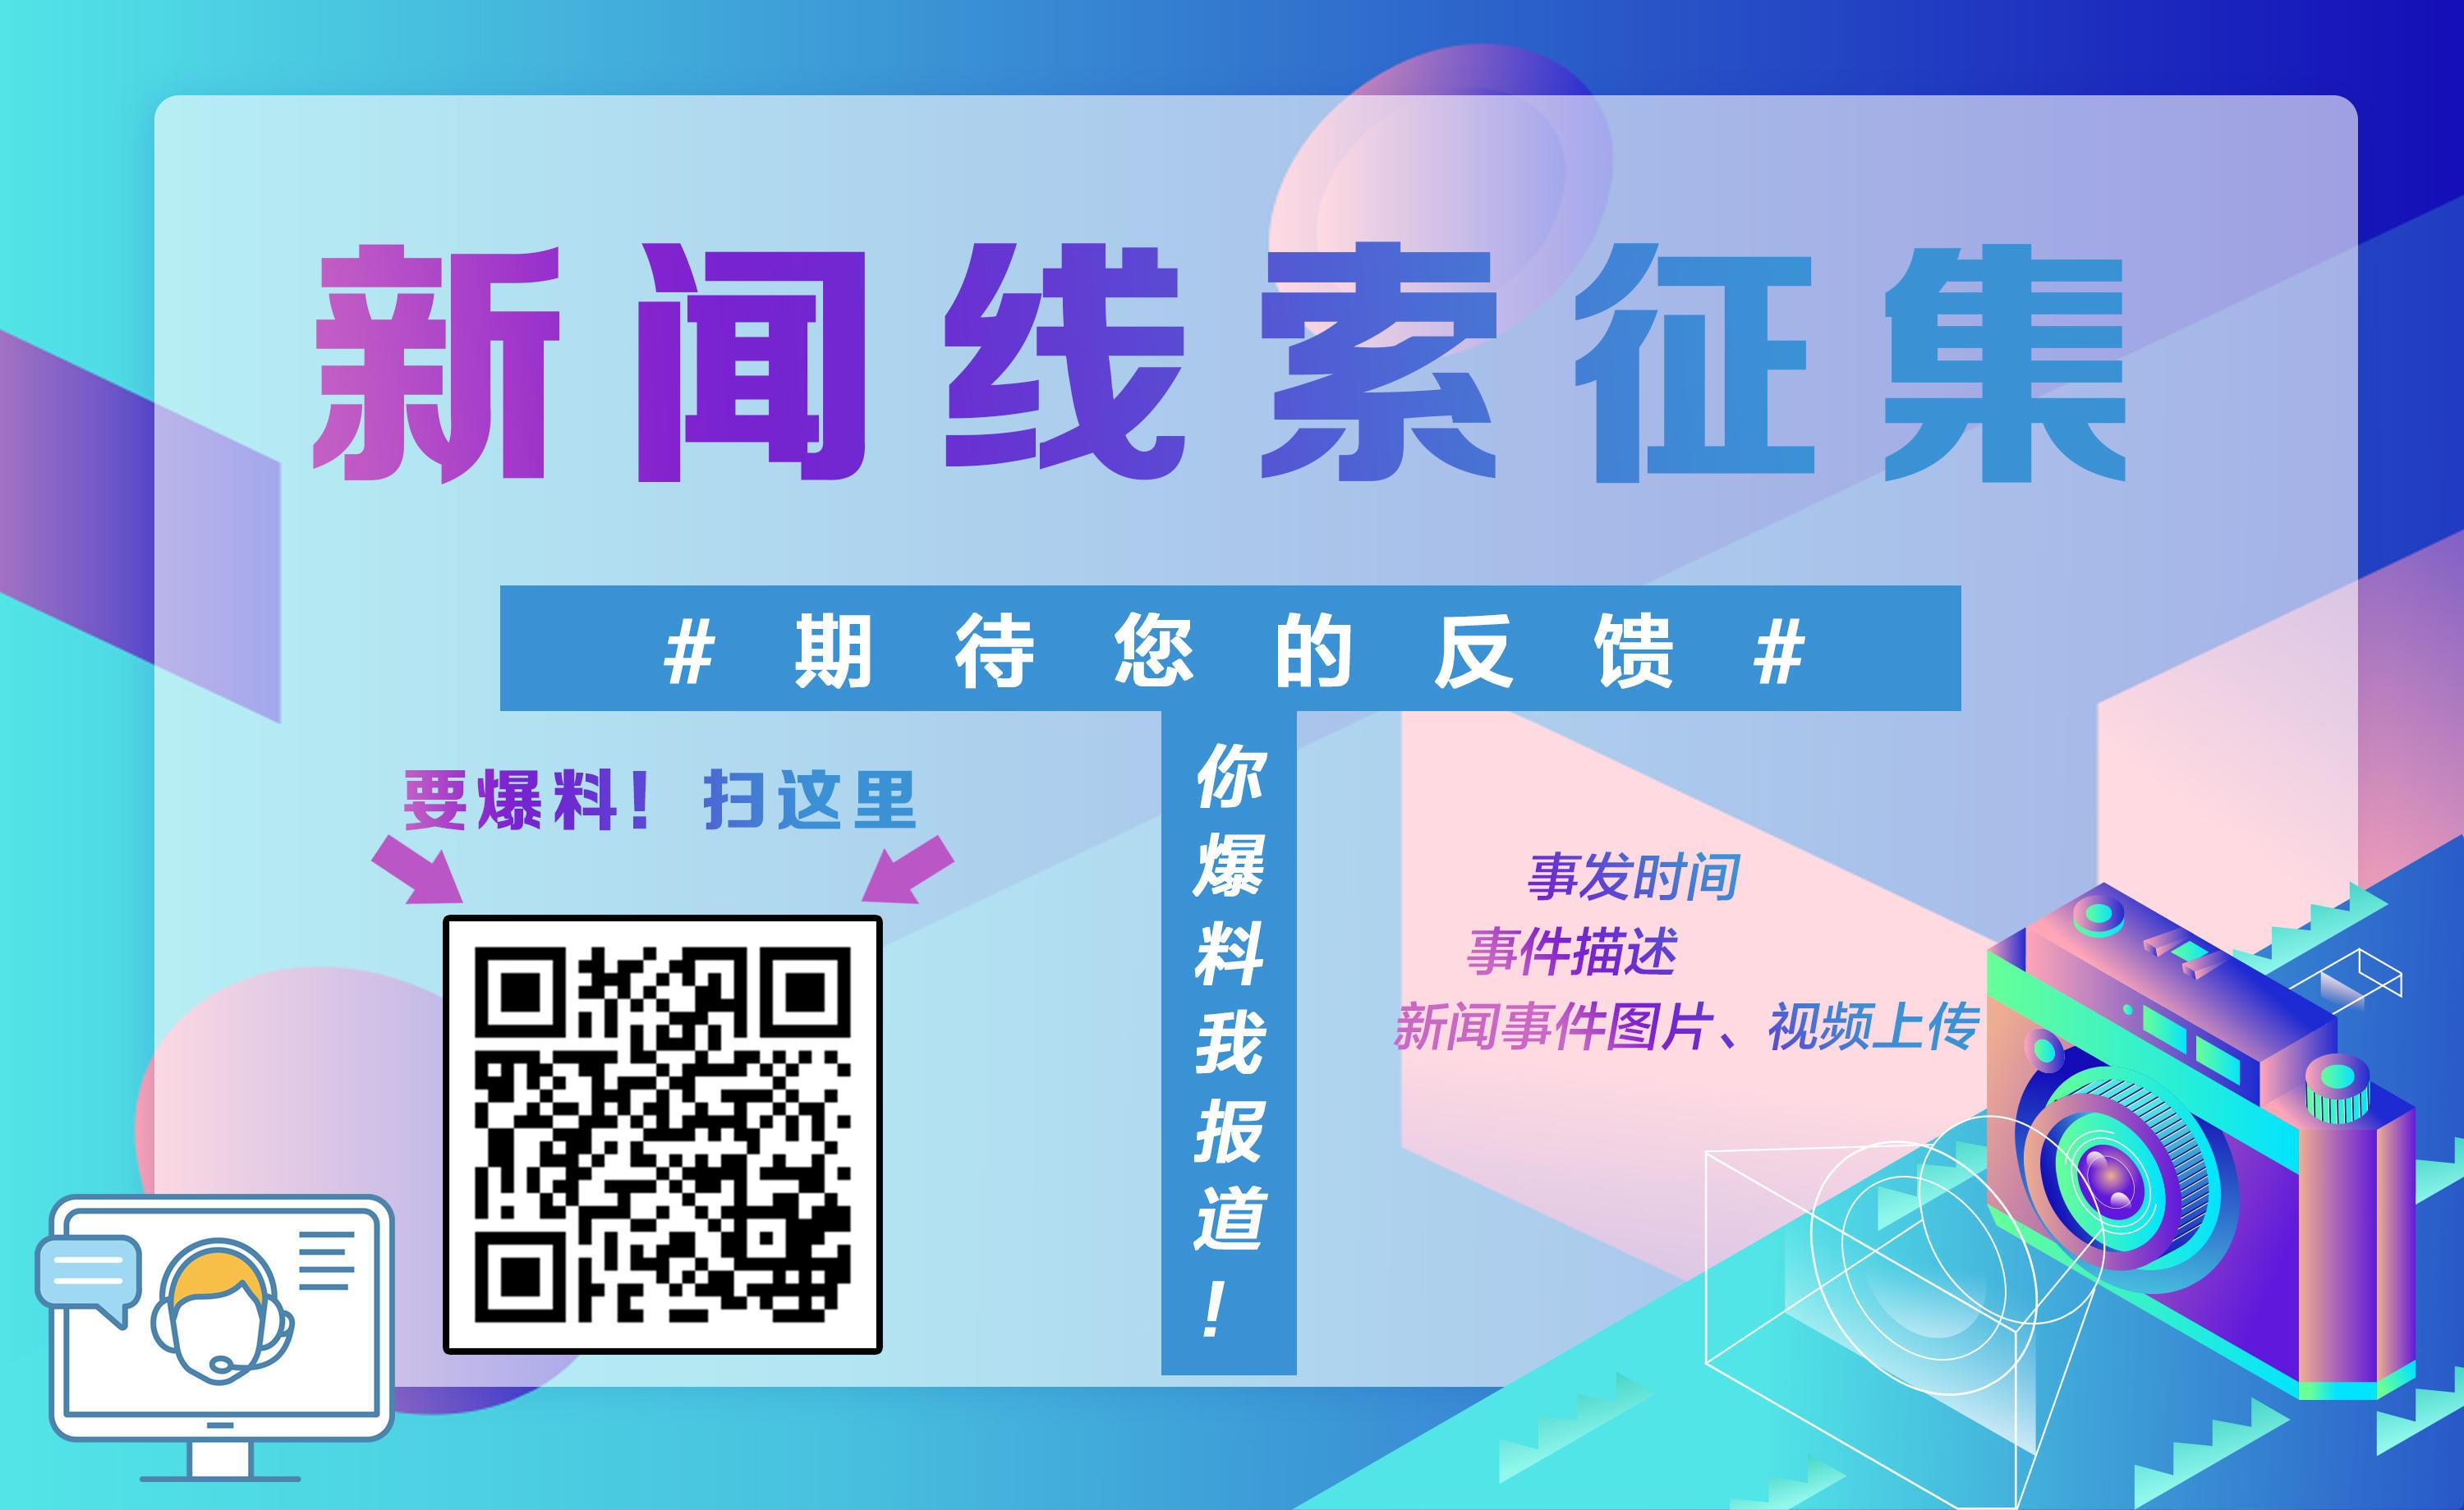 聚焦数字化、激活“朋友圈”：数字江海上海国资数字化创新沙龙成功举办